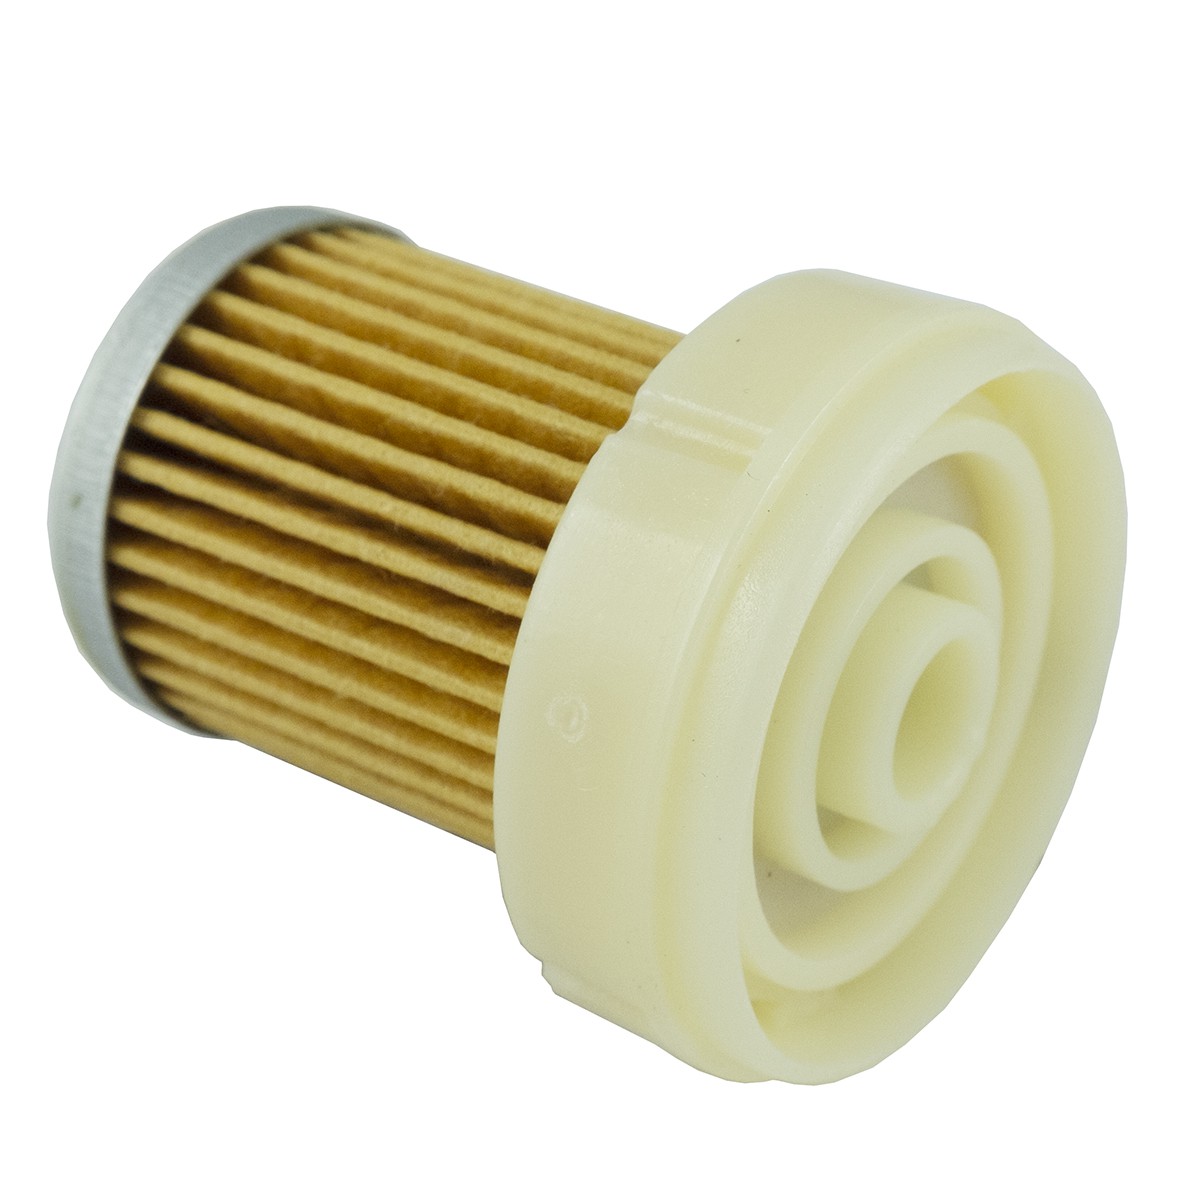 Palivový filtr Kubota 35 x 54 mm Kubota 6A320-59930, SN 21599, SK 3205, 5-01-124-29